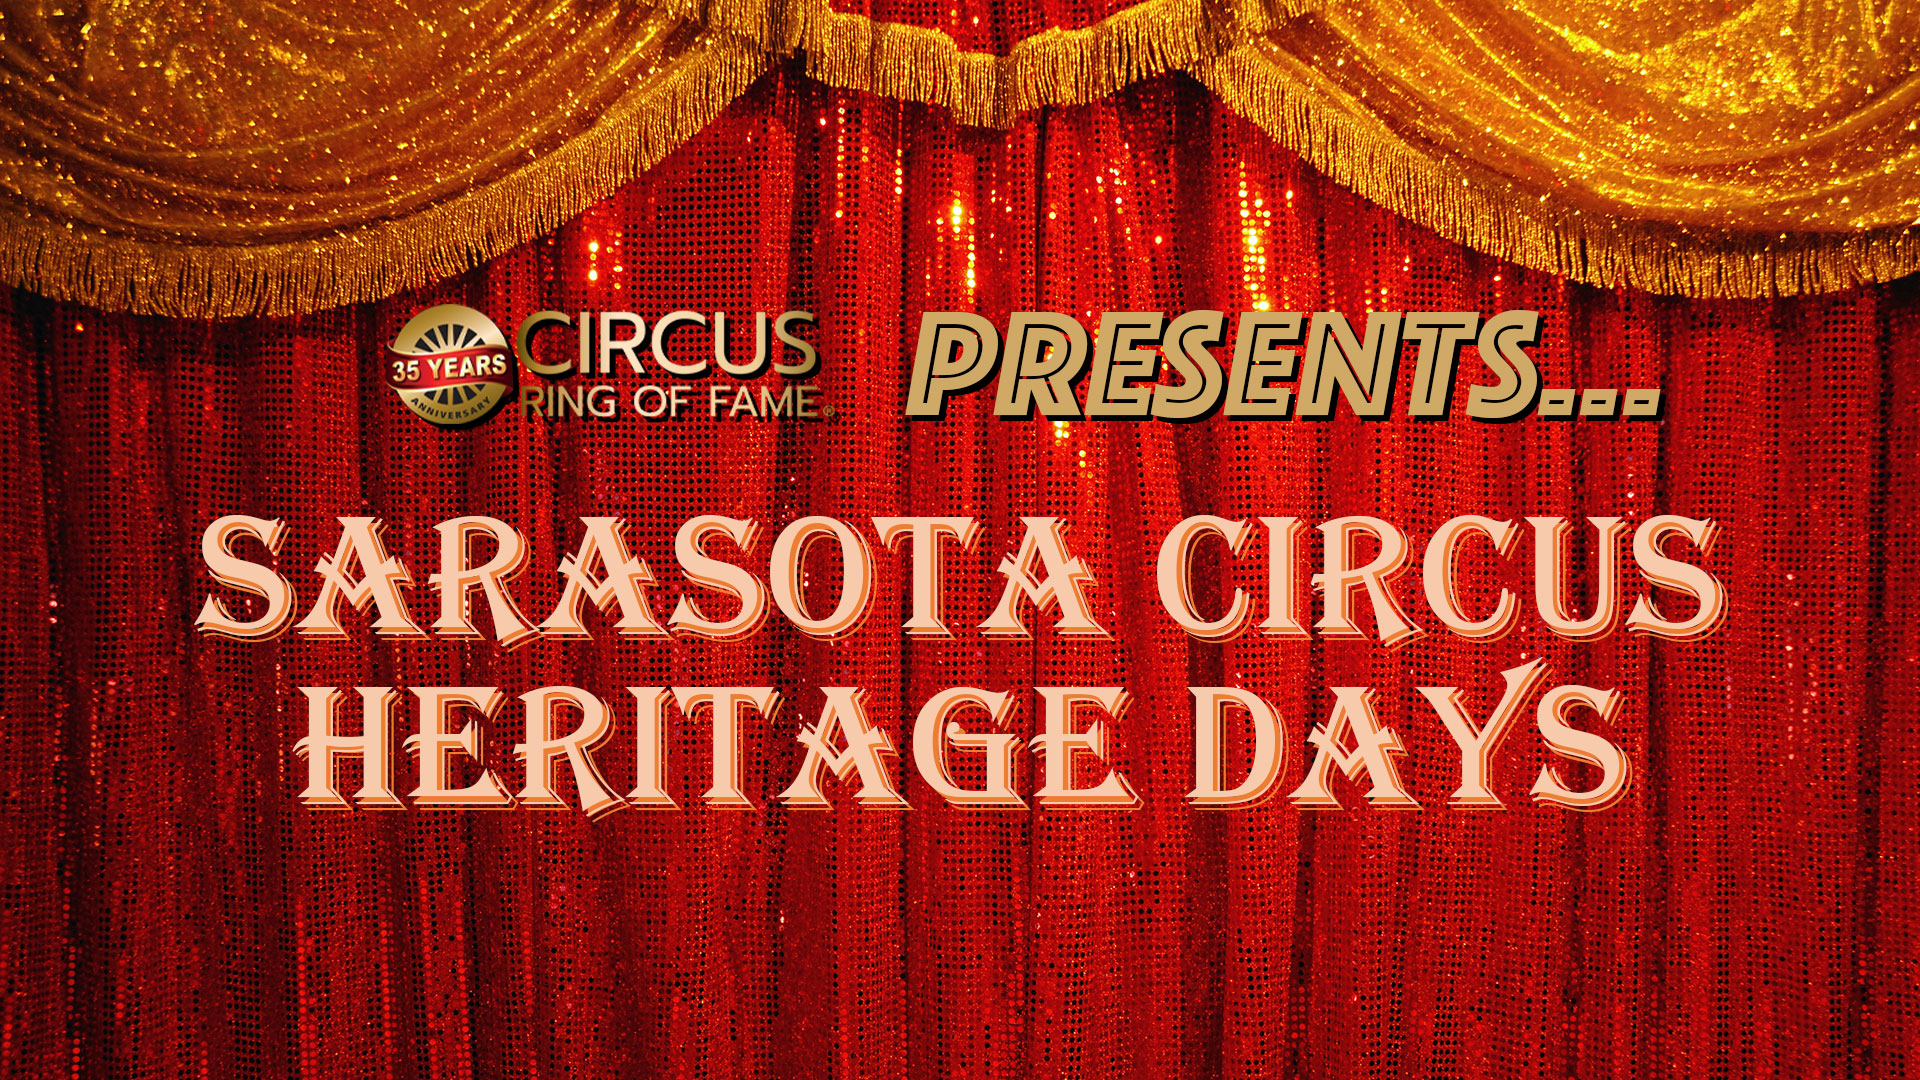 Sarasota Circus Heritage Days